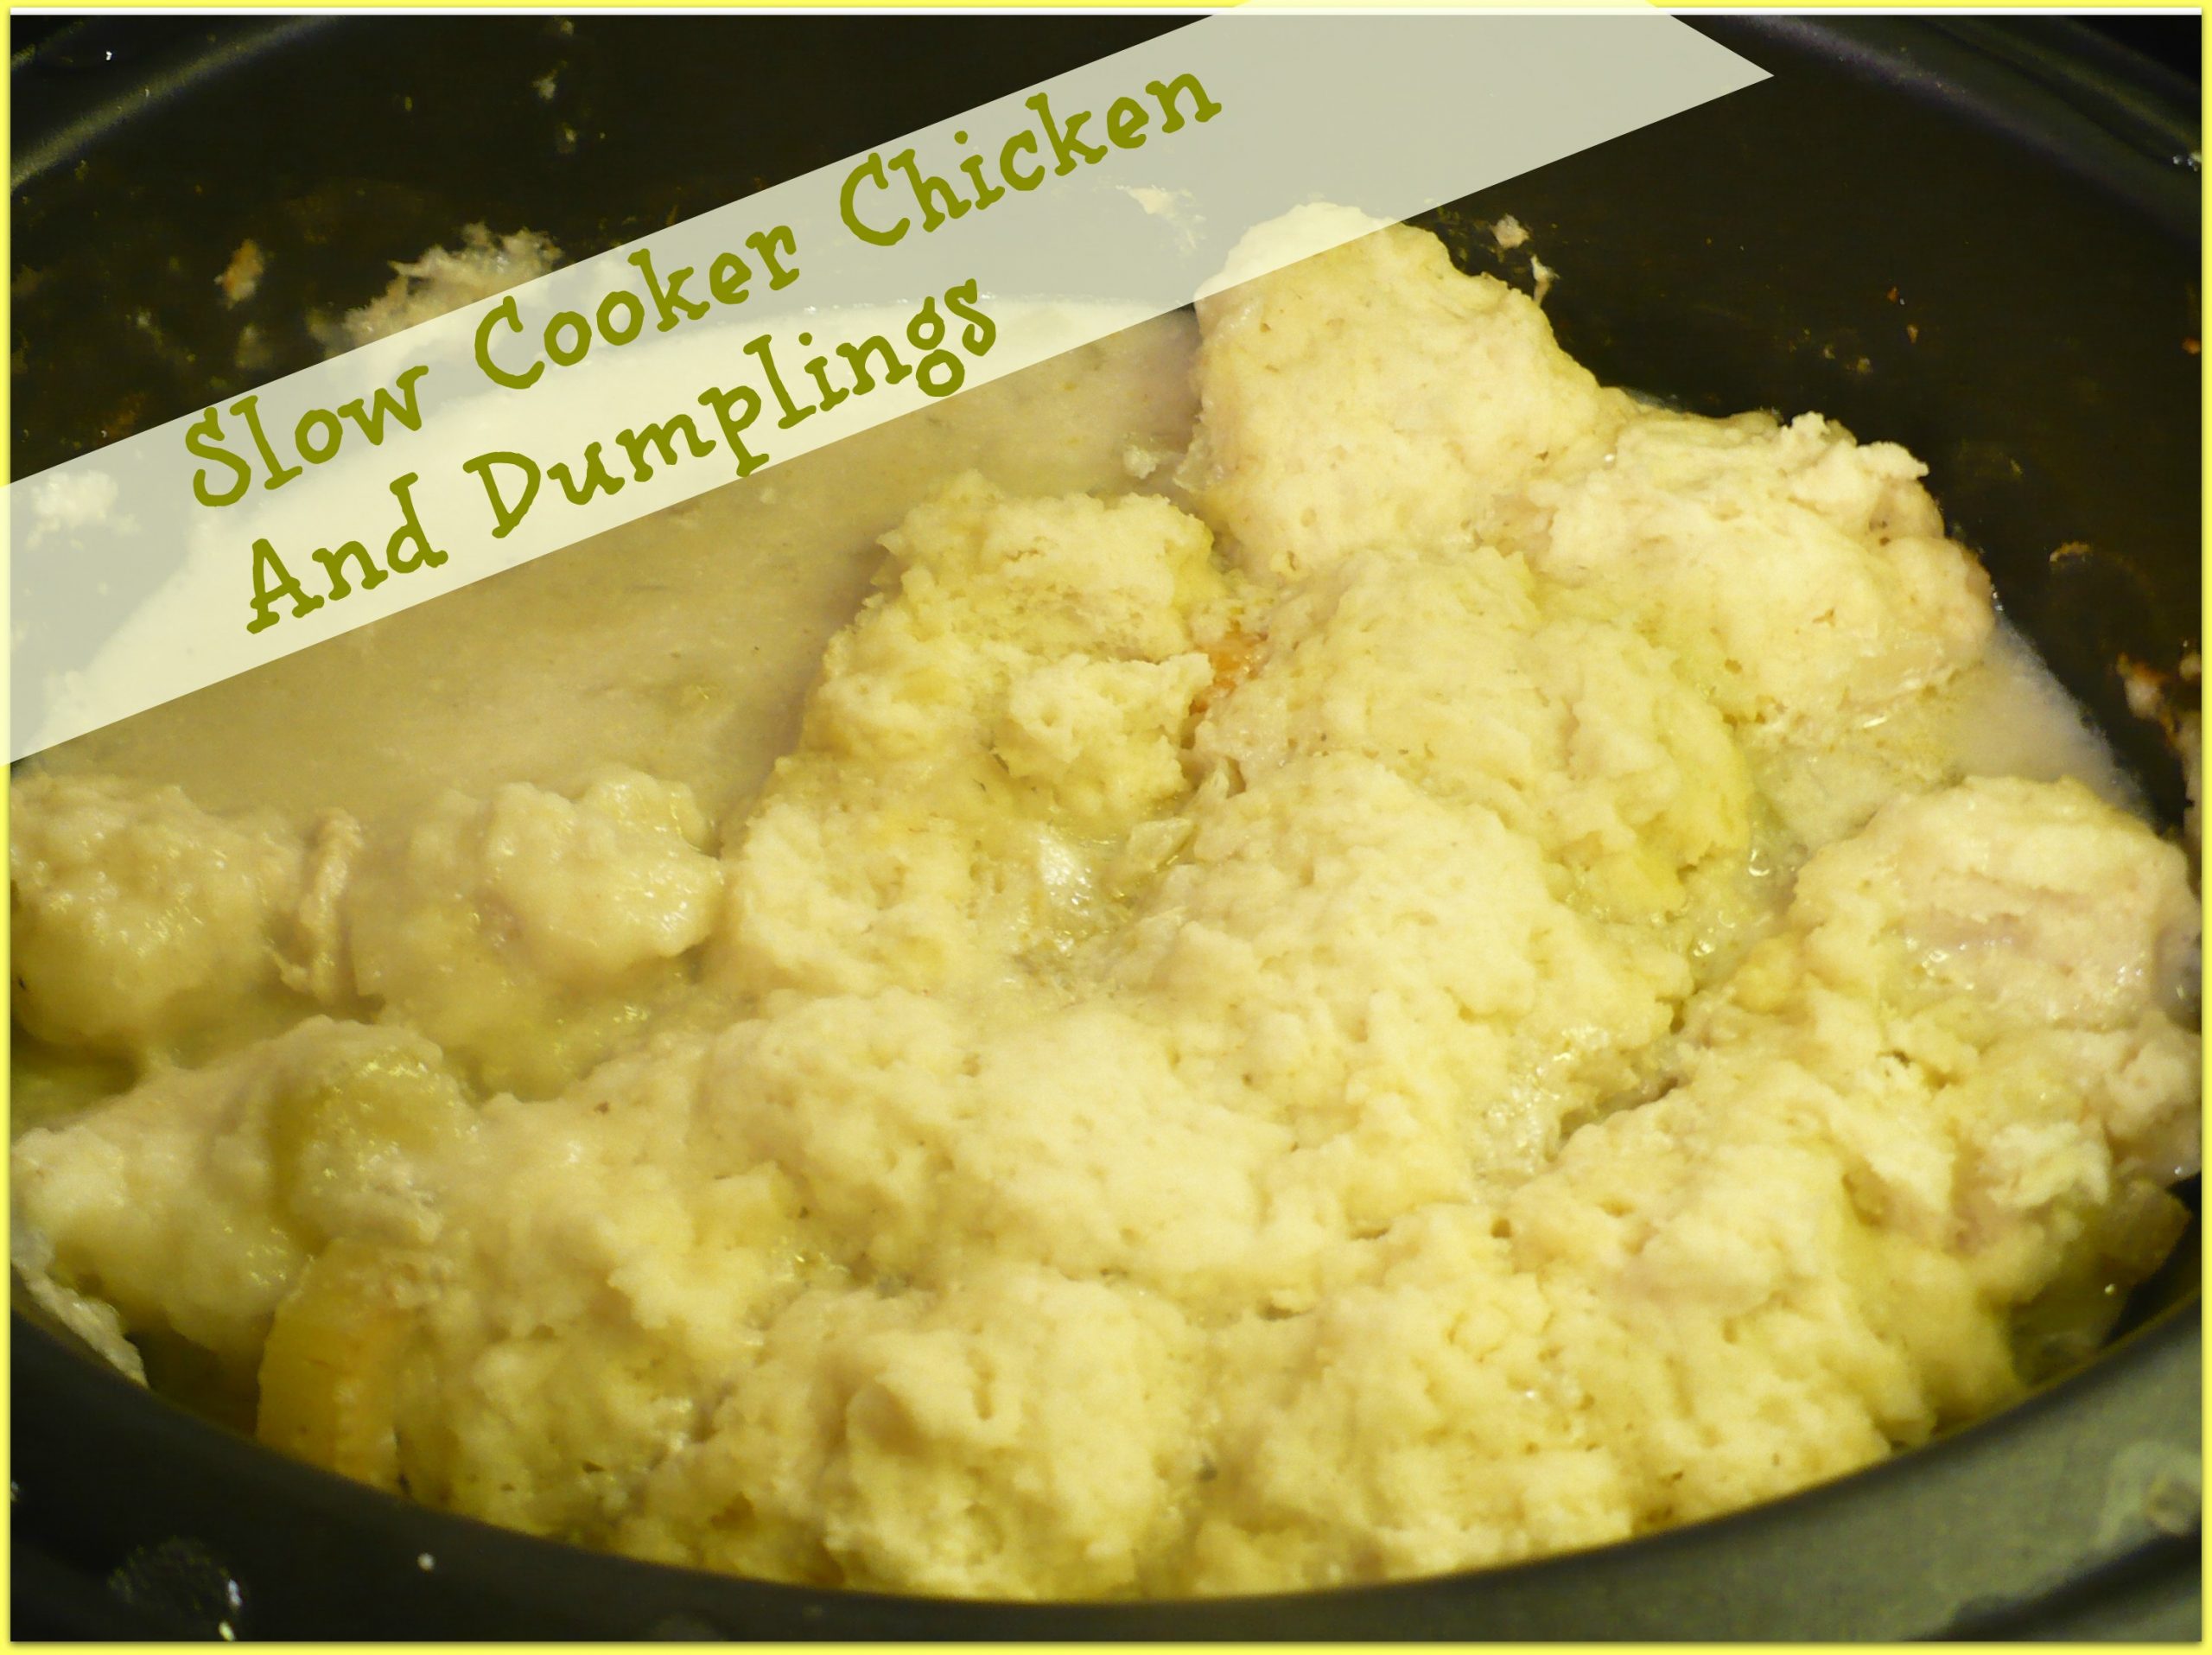 Slow Cooker Chicken And Dumplings